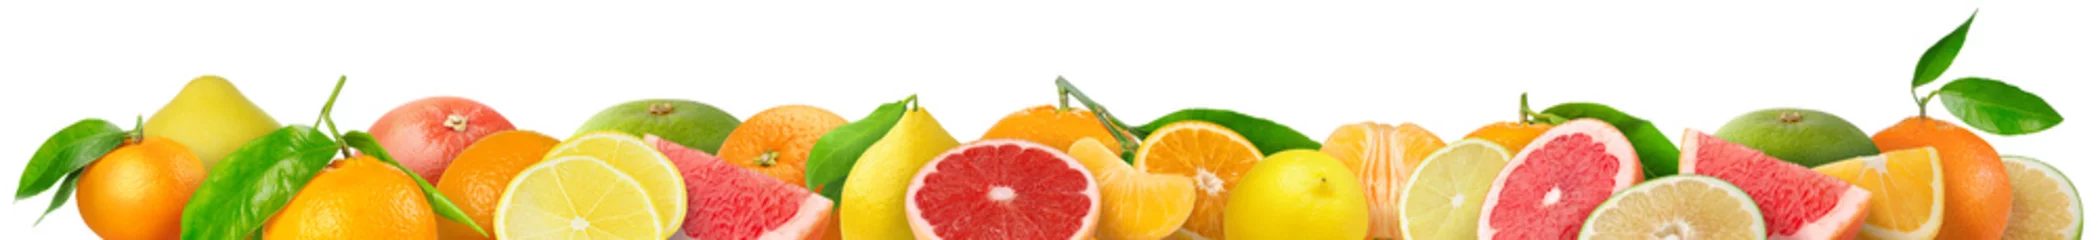 Tuinposter Gemengde citrusvruchten grens. Stapel sinaasappel, citroen, mandarijn, grapefruit en andere citrusvruchten in horizontale samenstelling geïsoleerd op witte achtergrond © ChaoticDesignStudio